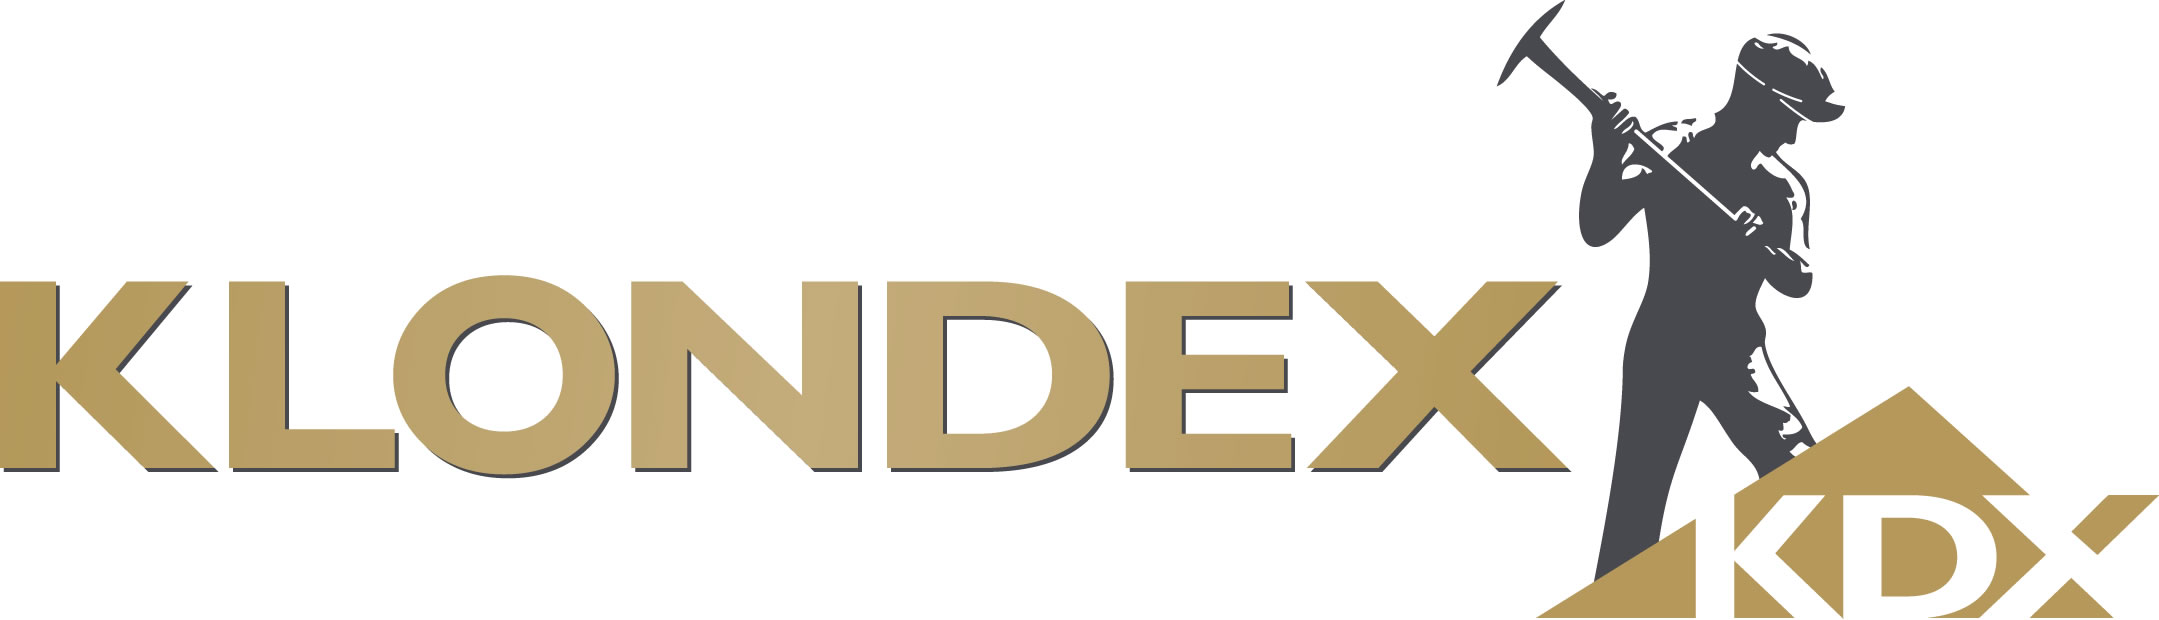 Klondex Reports Stro